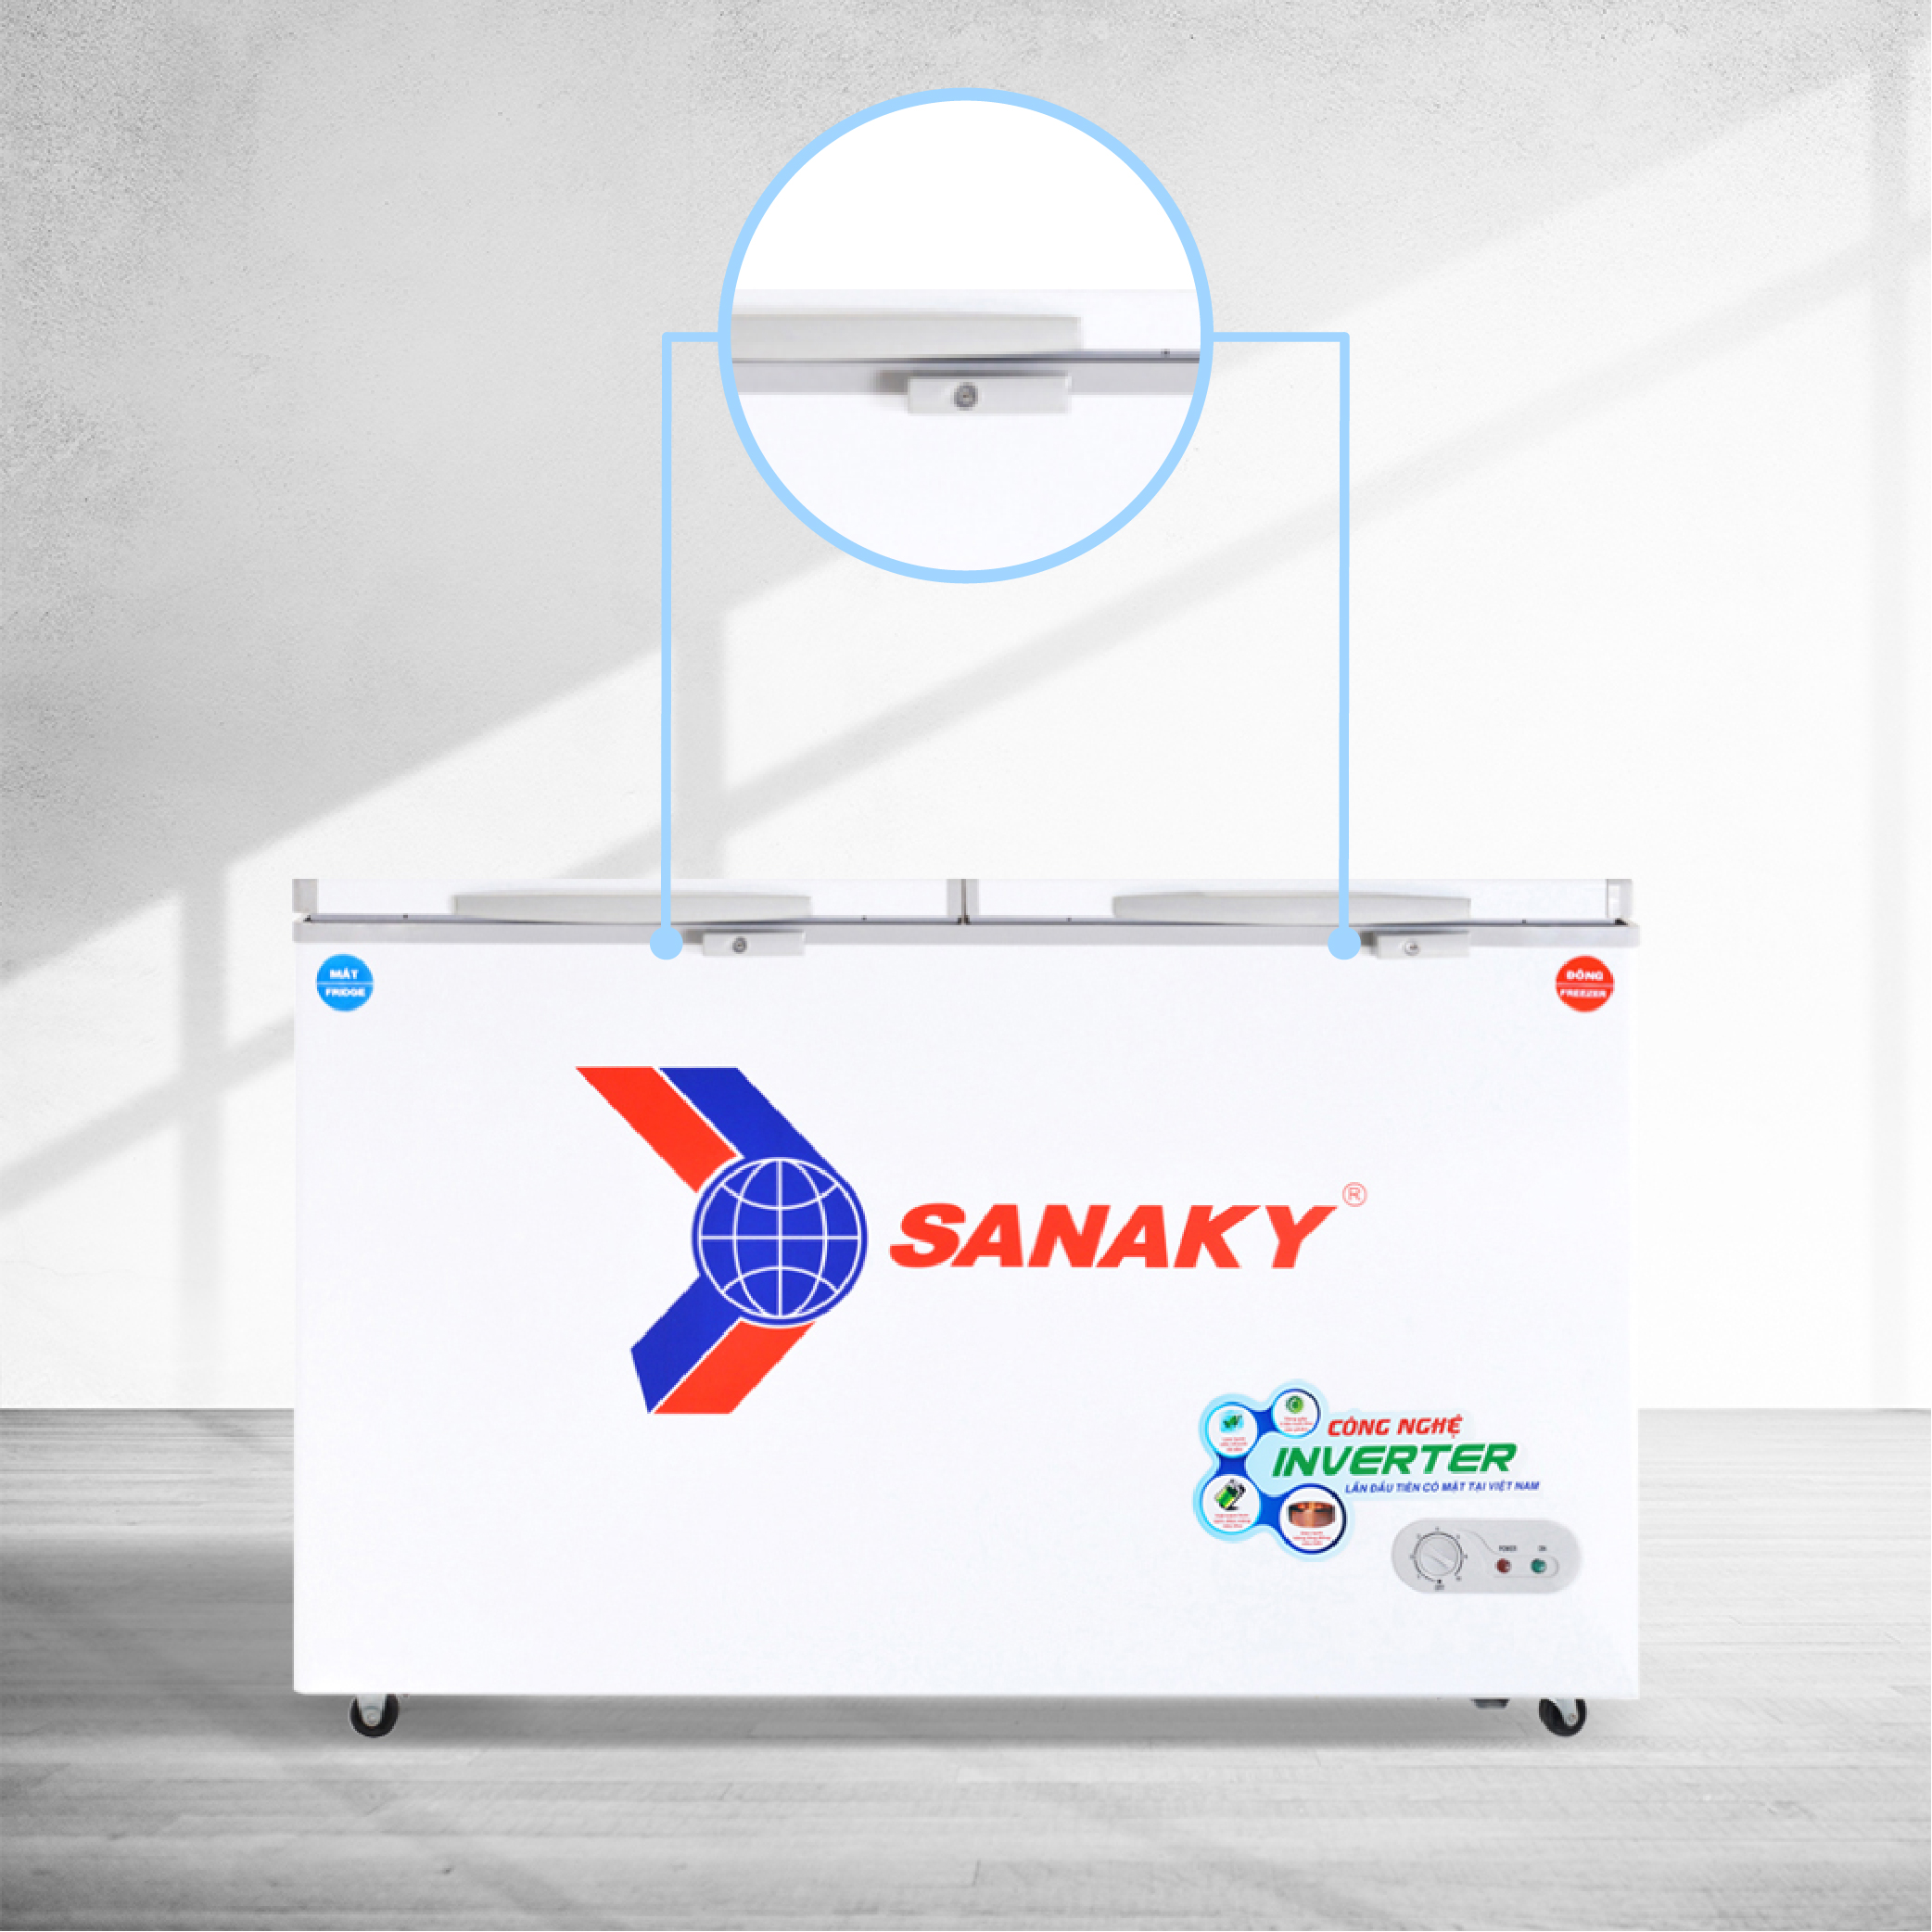 Tủ Đông Sanaky VH-5699W3 400 lít, 1 ngăn đông, 1 ngăn mát, inverter